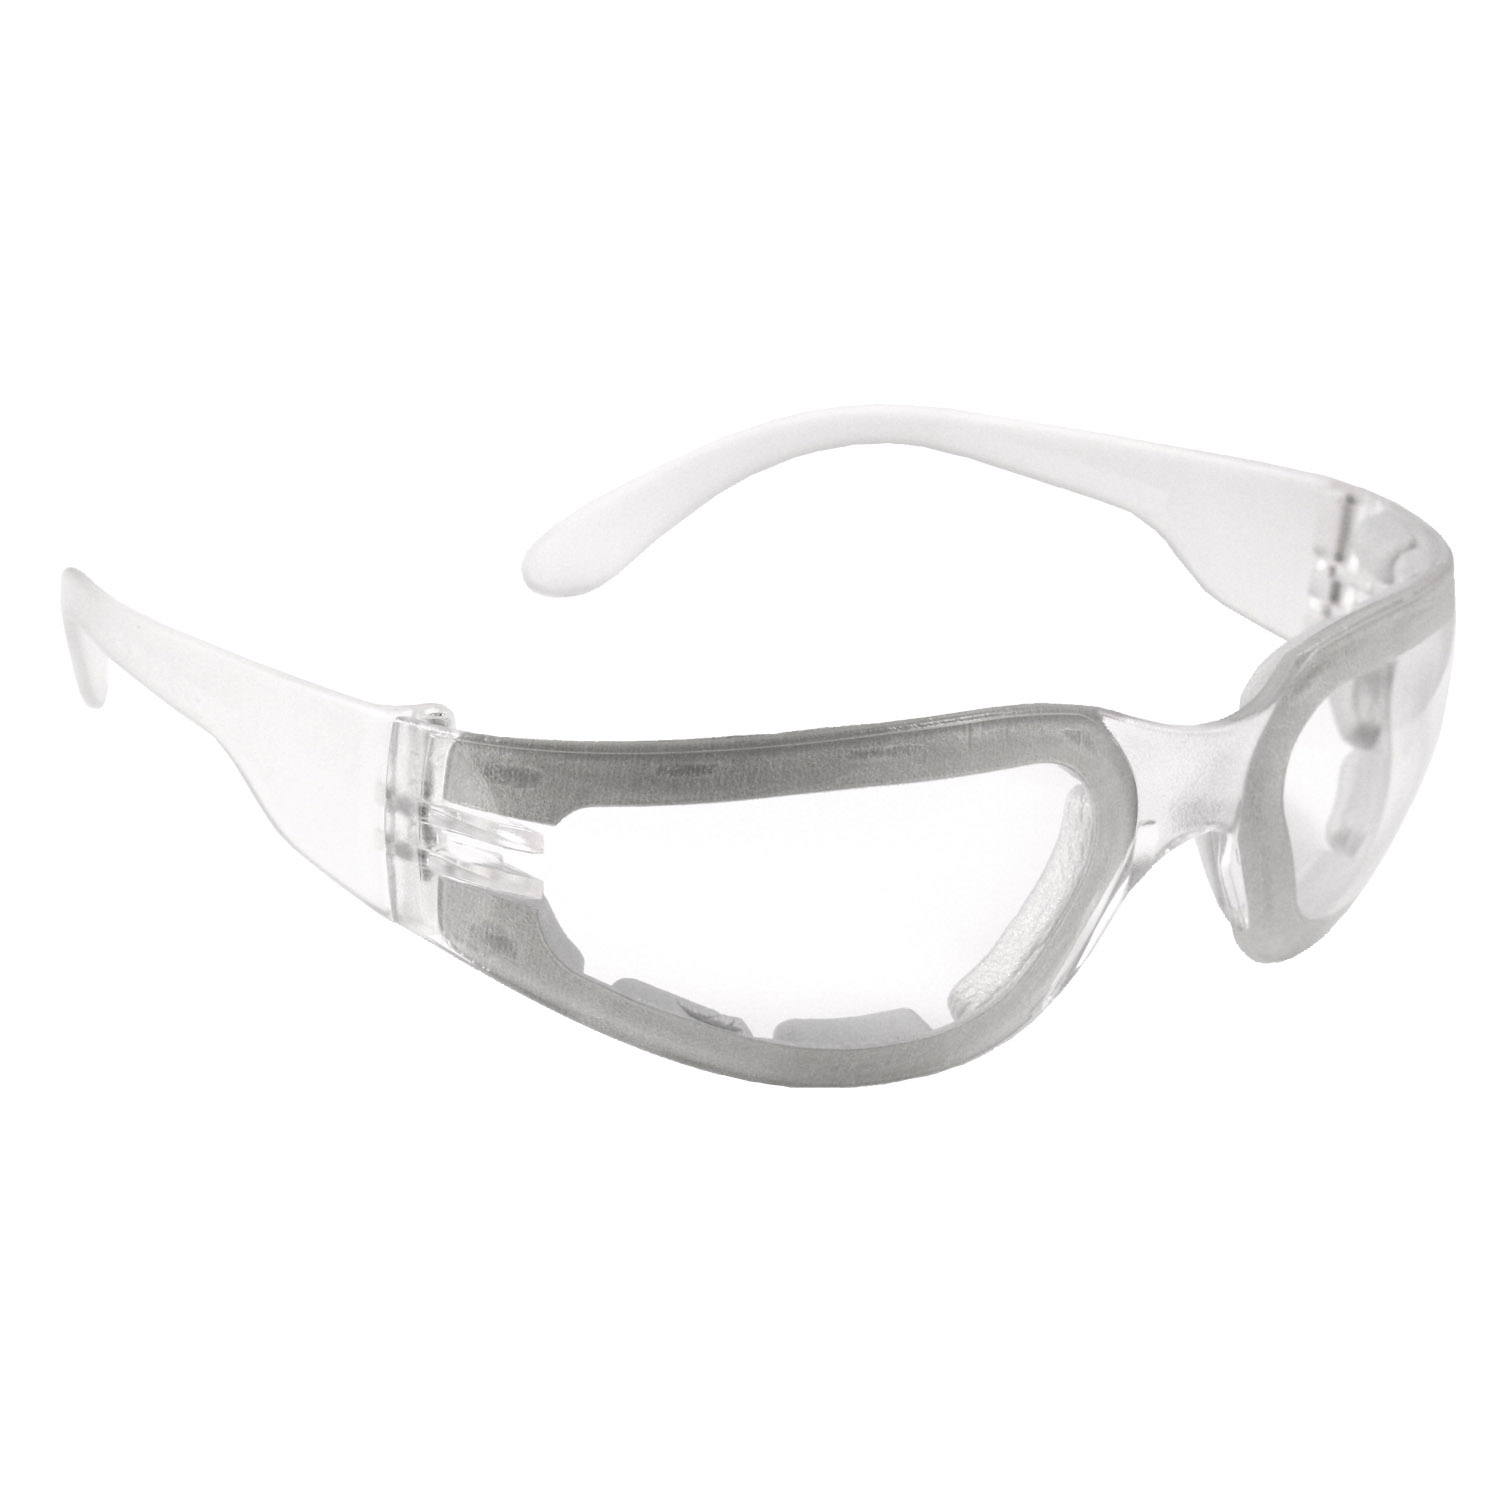 Mirage™ Foam Small Safety Eyewear - Clear Frame - Clear Anti-Fog Lens - Anti-Fog Lens